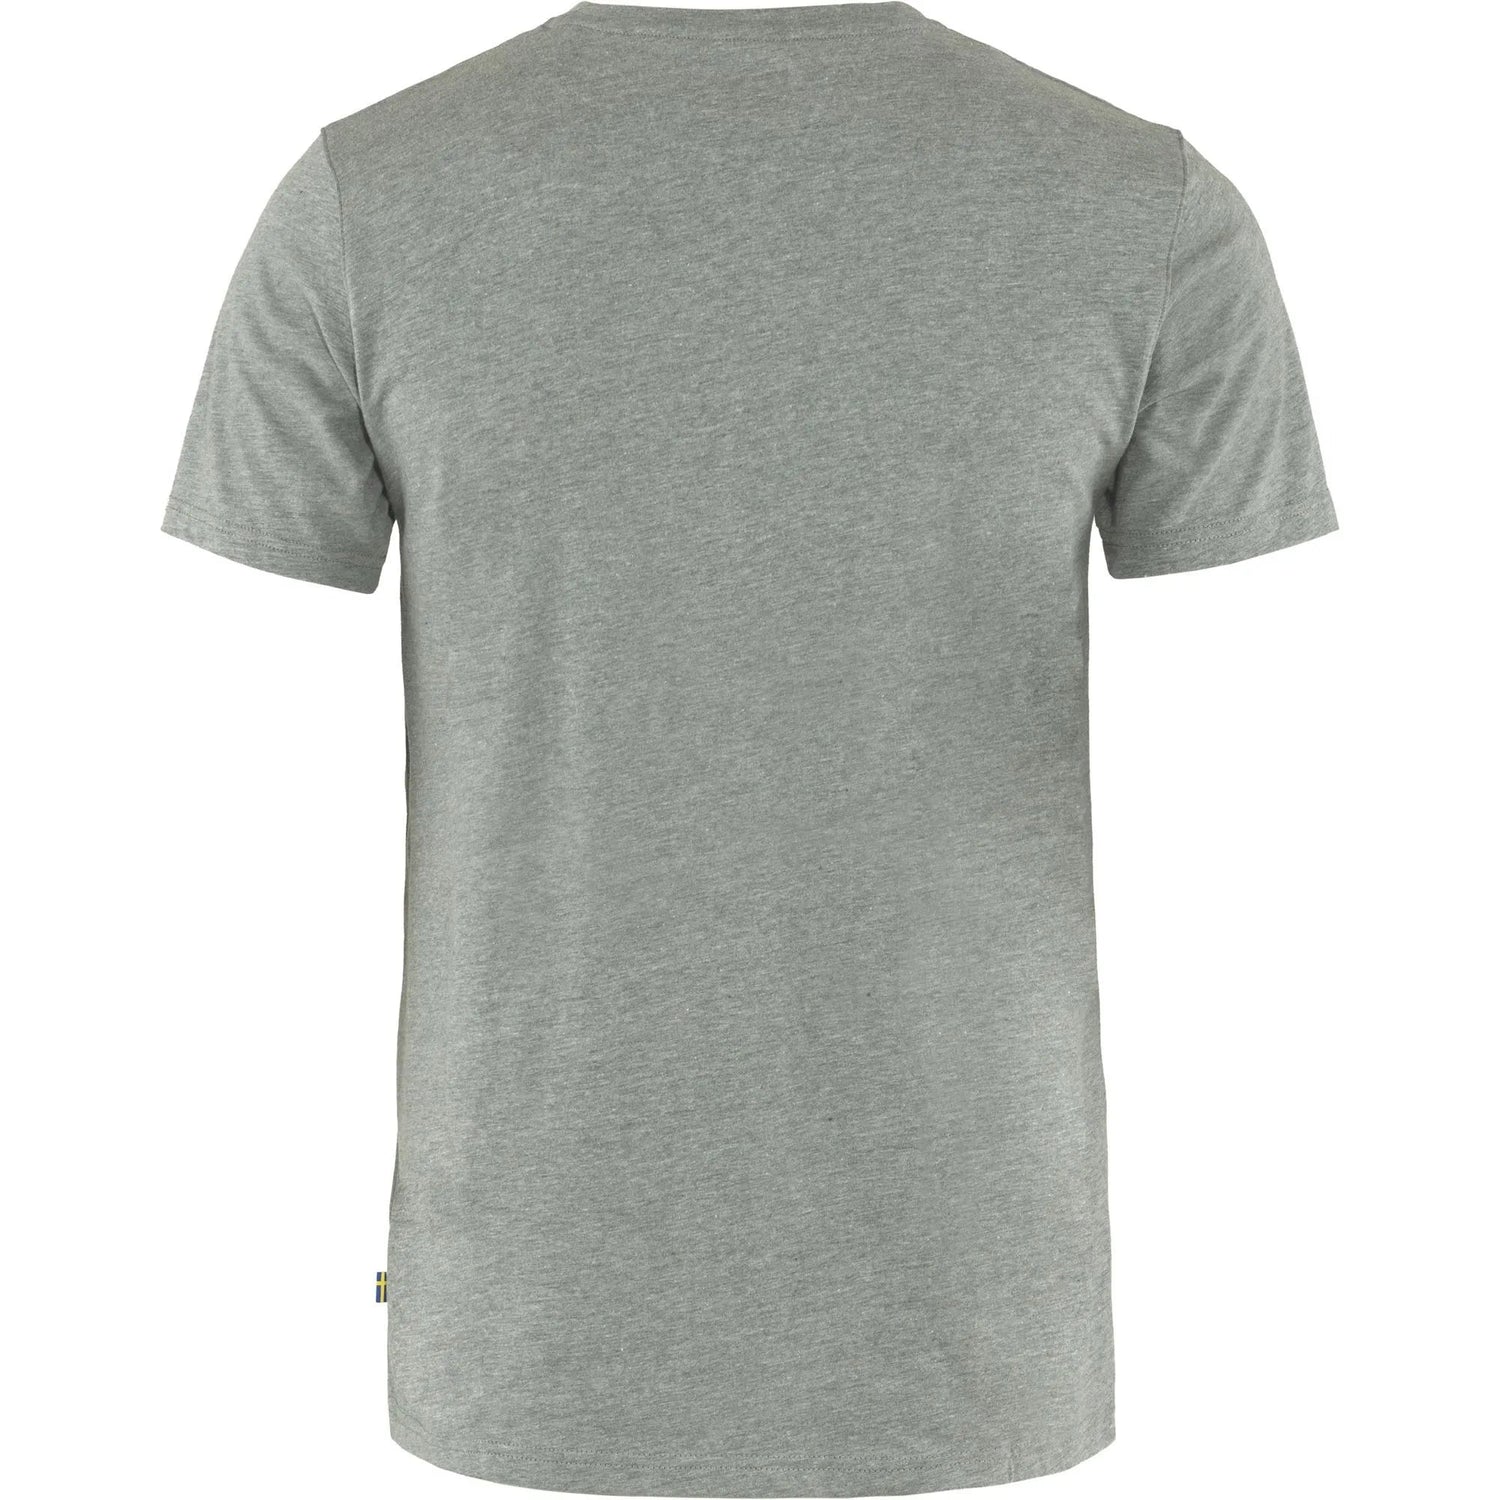 Fjällräven M's Fjällräven Logo T-shirt - Organic cotton & recycled polyester Grey Melange Shirt